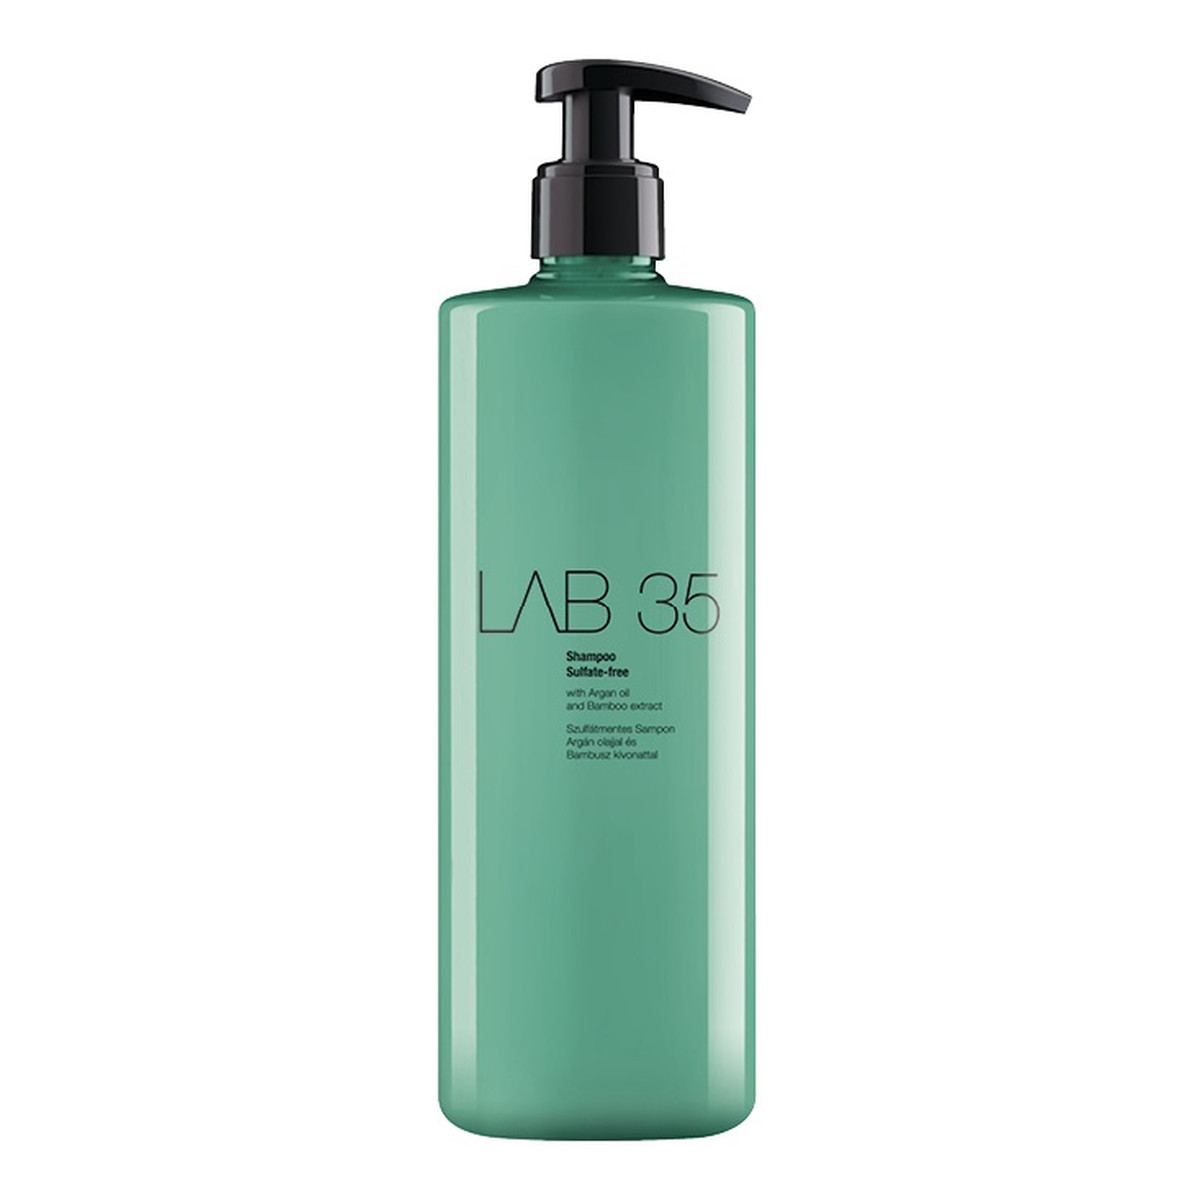 Kallos Lab 35 sulfate-free shampoo bezsiarczanowy szampon do włosów normalnych i wrażliwych 500ml